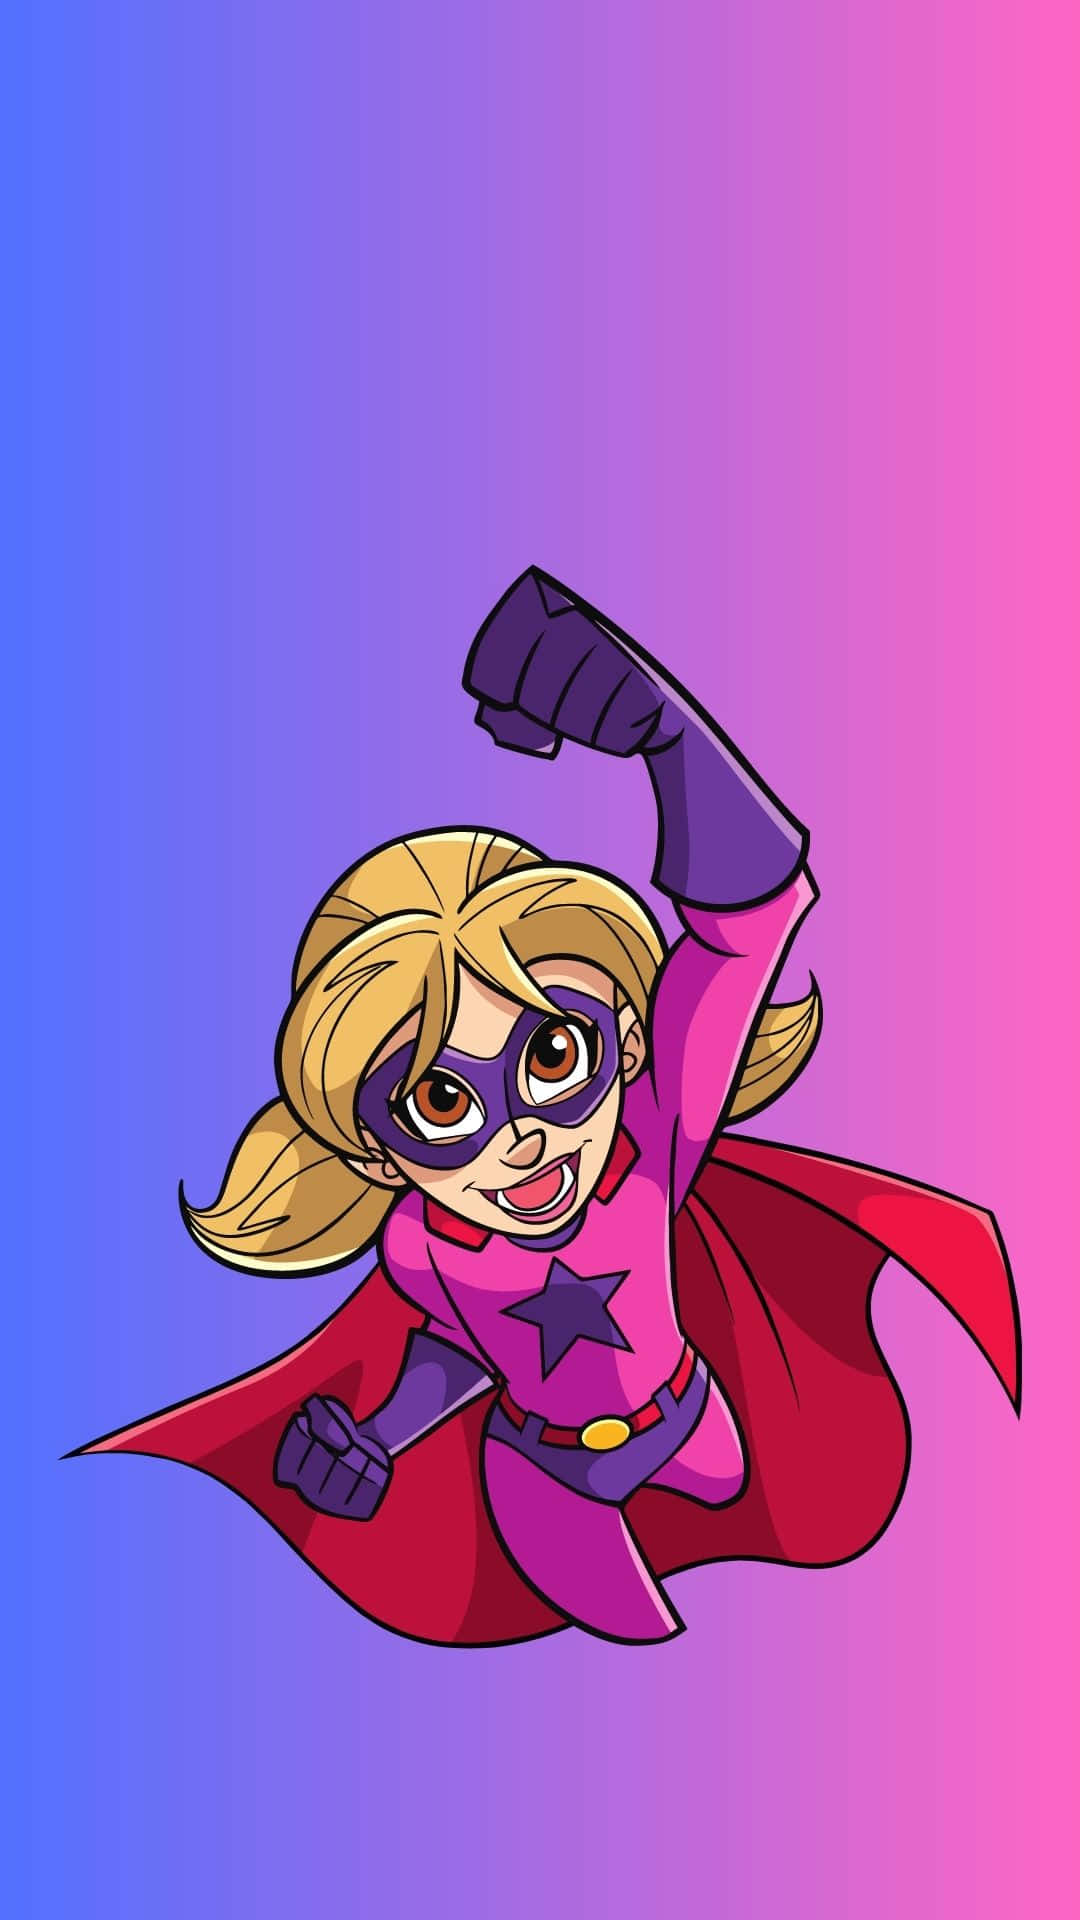 Hintergrundmit Superheld In Pinkem Und Violettem Anzug